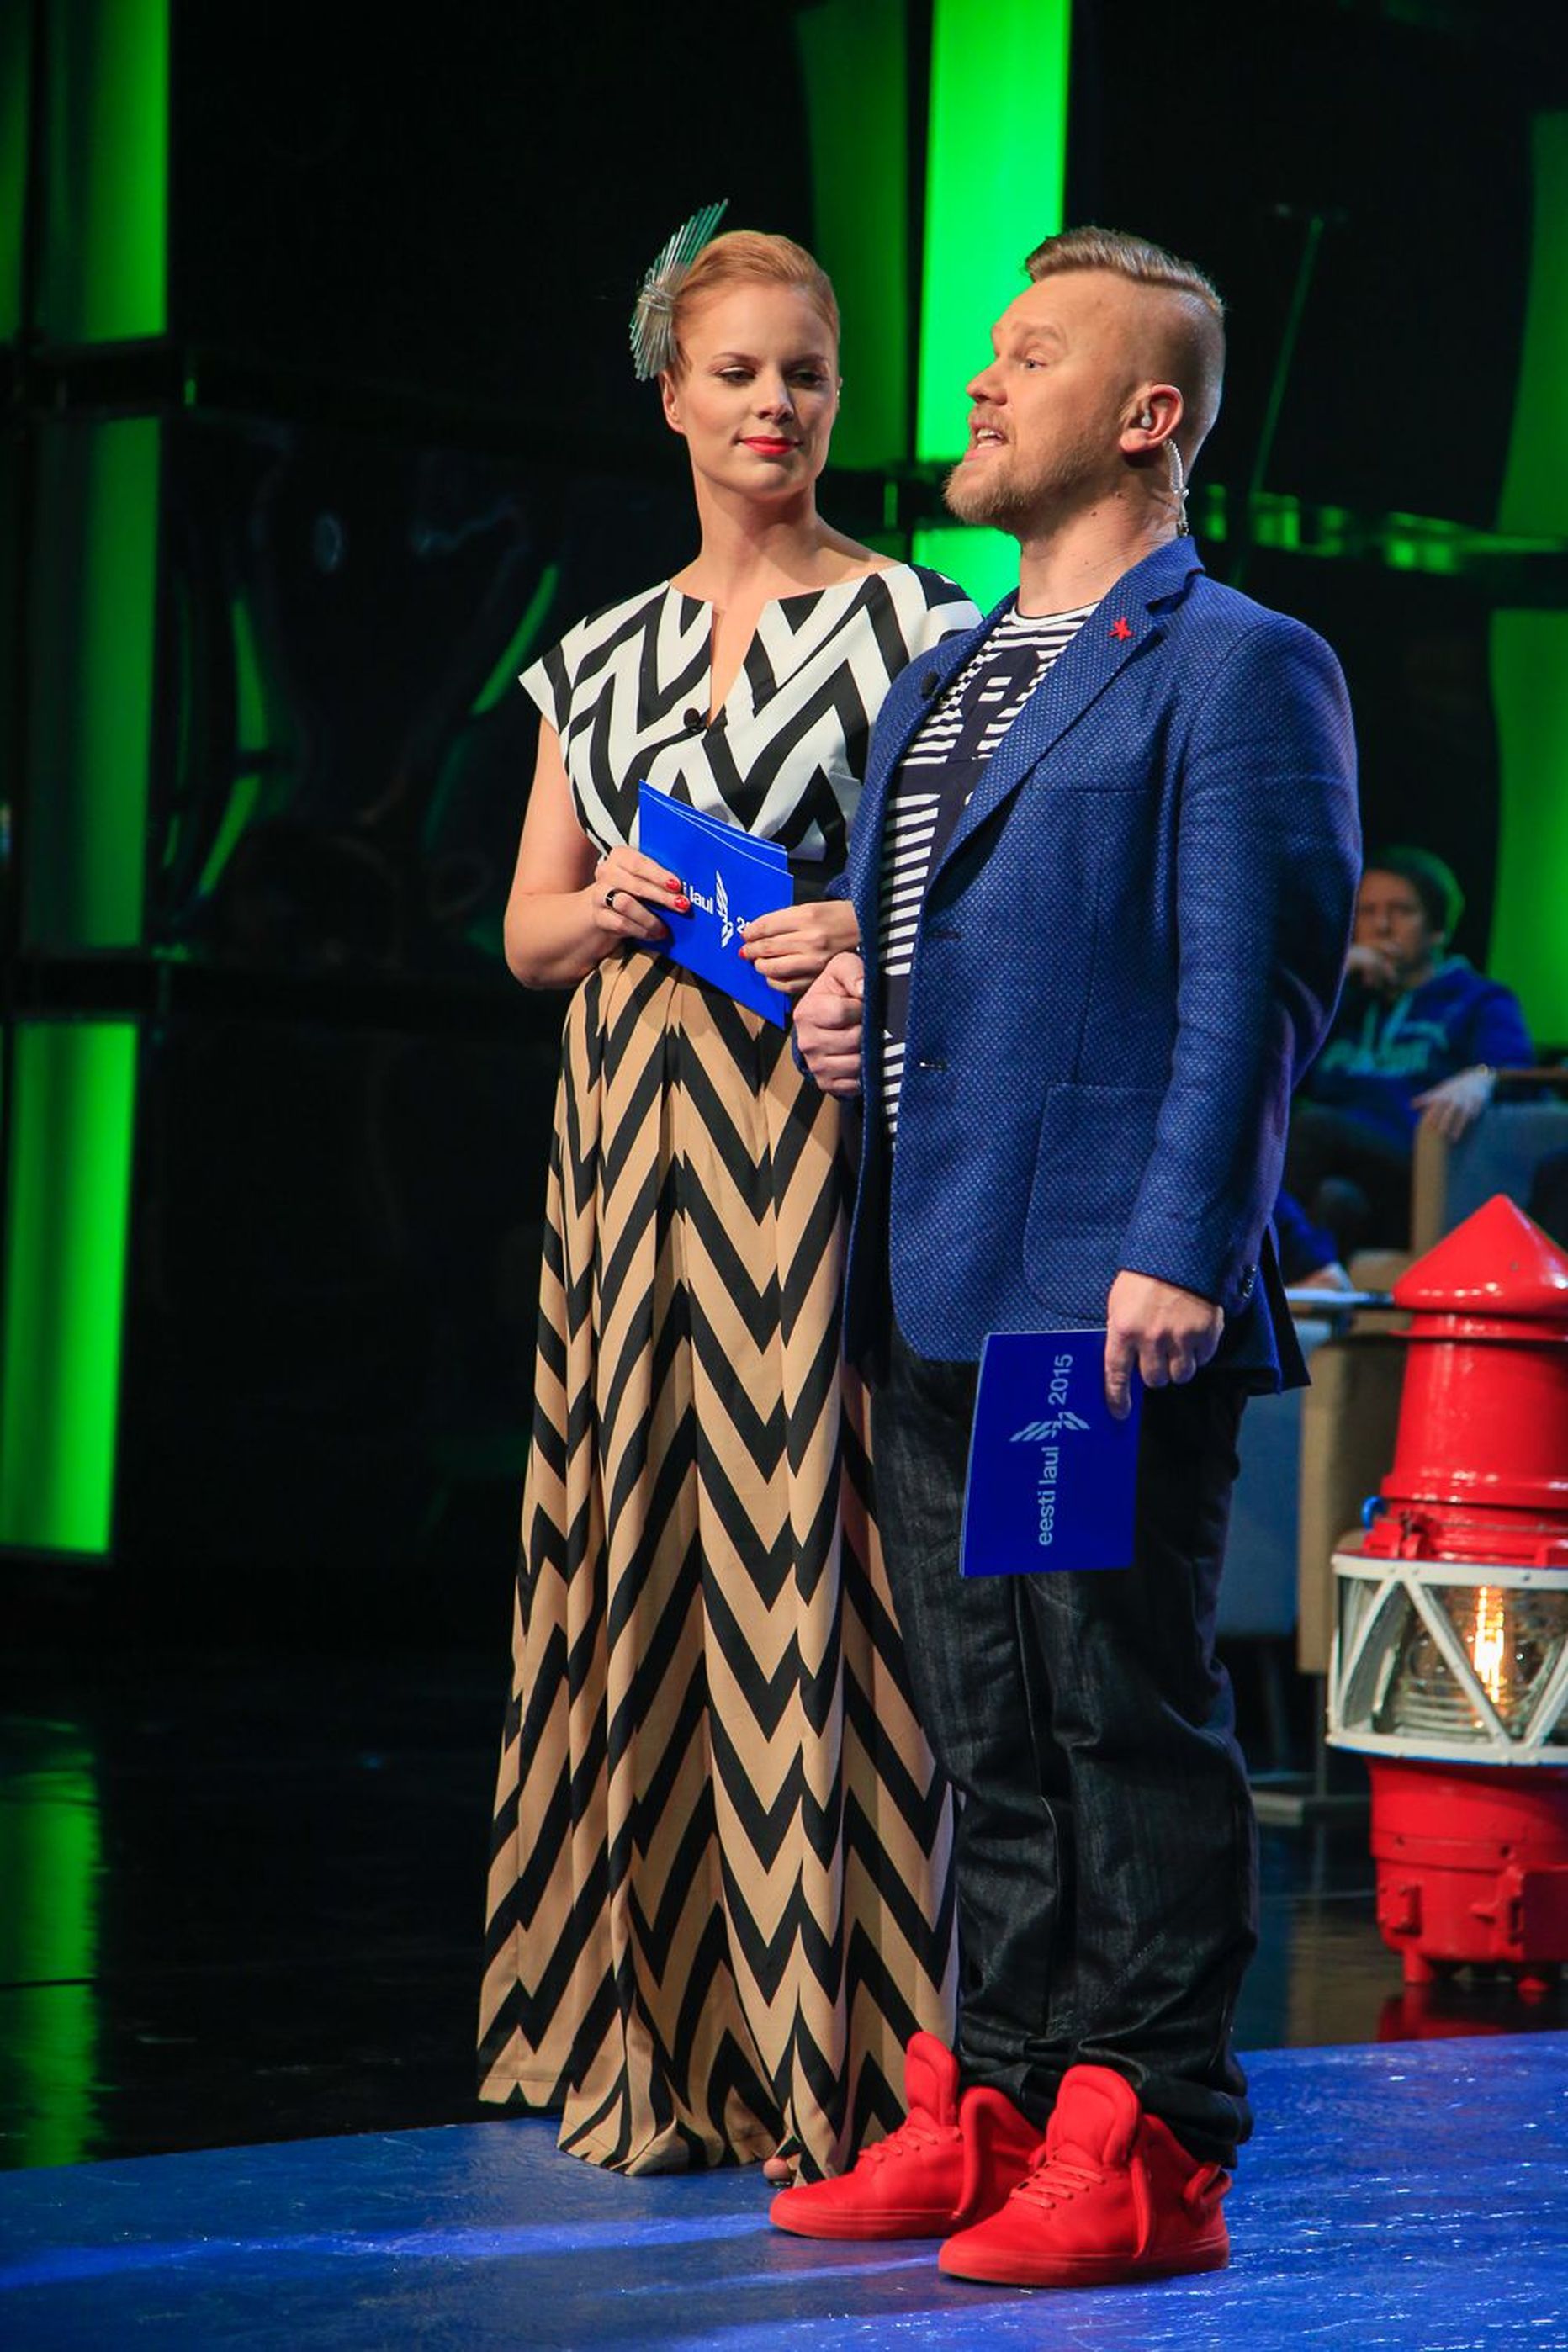 Eesti Laul 2015, esimene poolfinaal, otsesaade. Helen Sürje ja Indrek Vaheoja